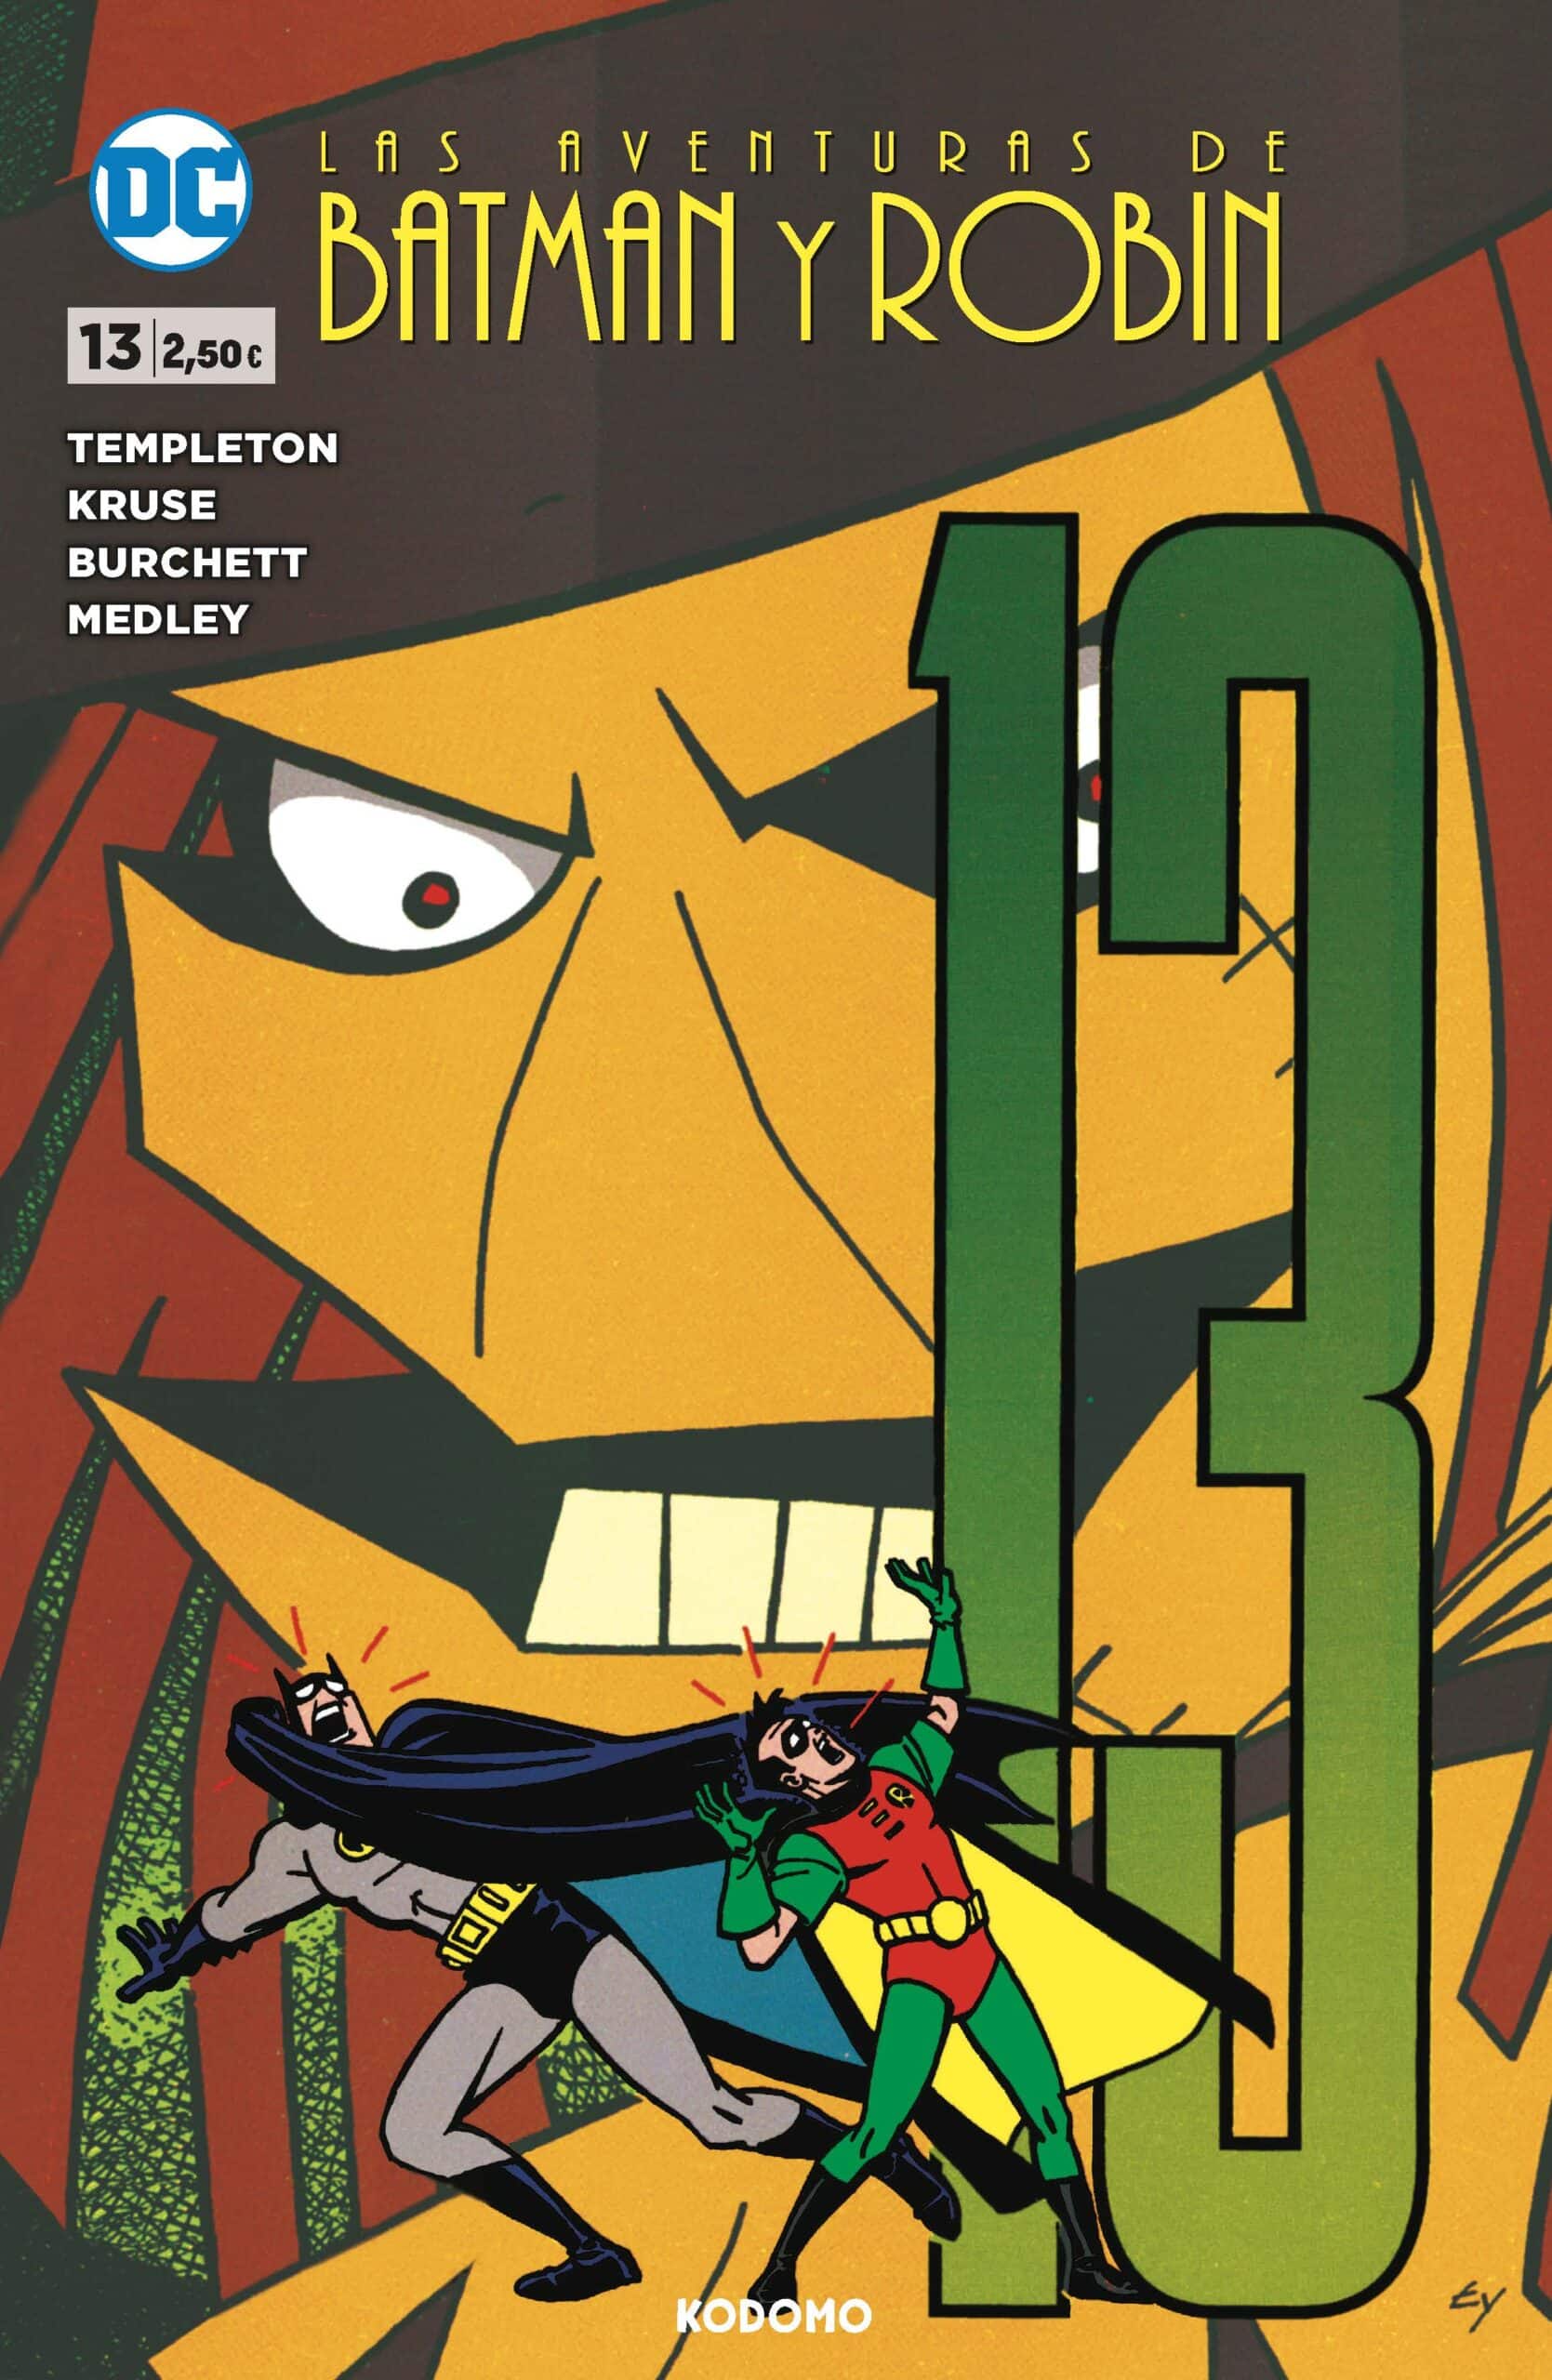 Las aventuras de Batman y Robin #13 - Galaktus comics